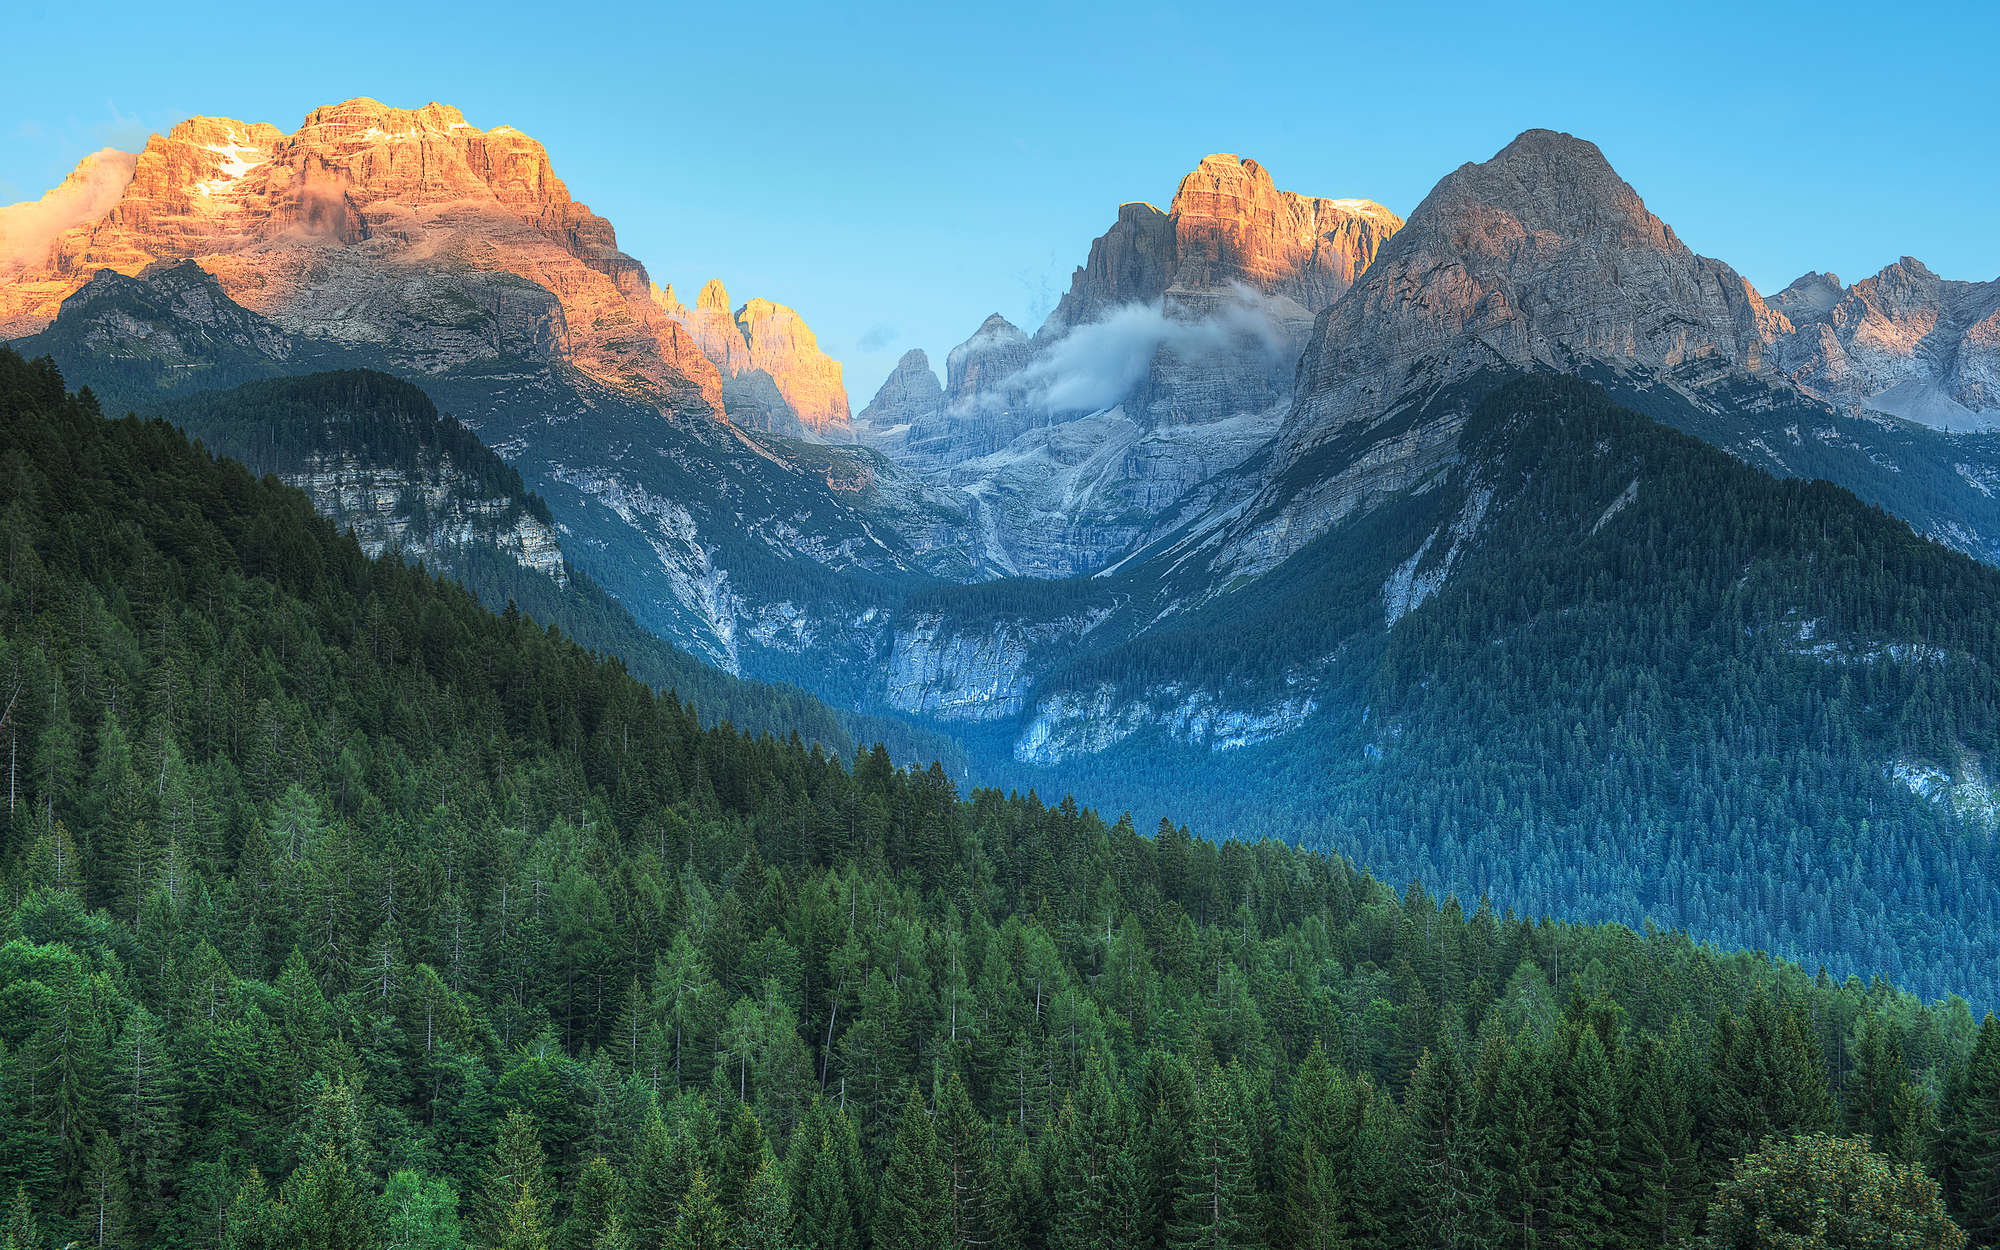             Fototapete Dolomiten Gebirge in Italien – Perlmutt Glattvlies
        